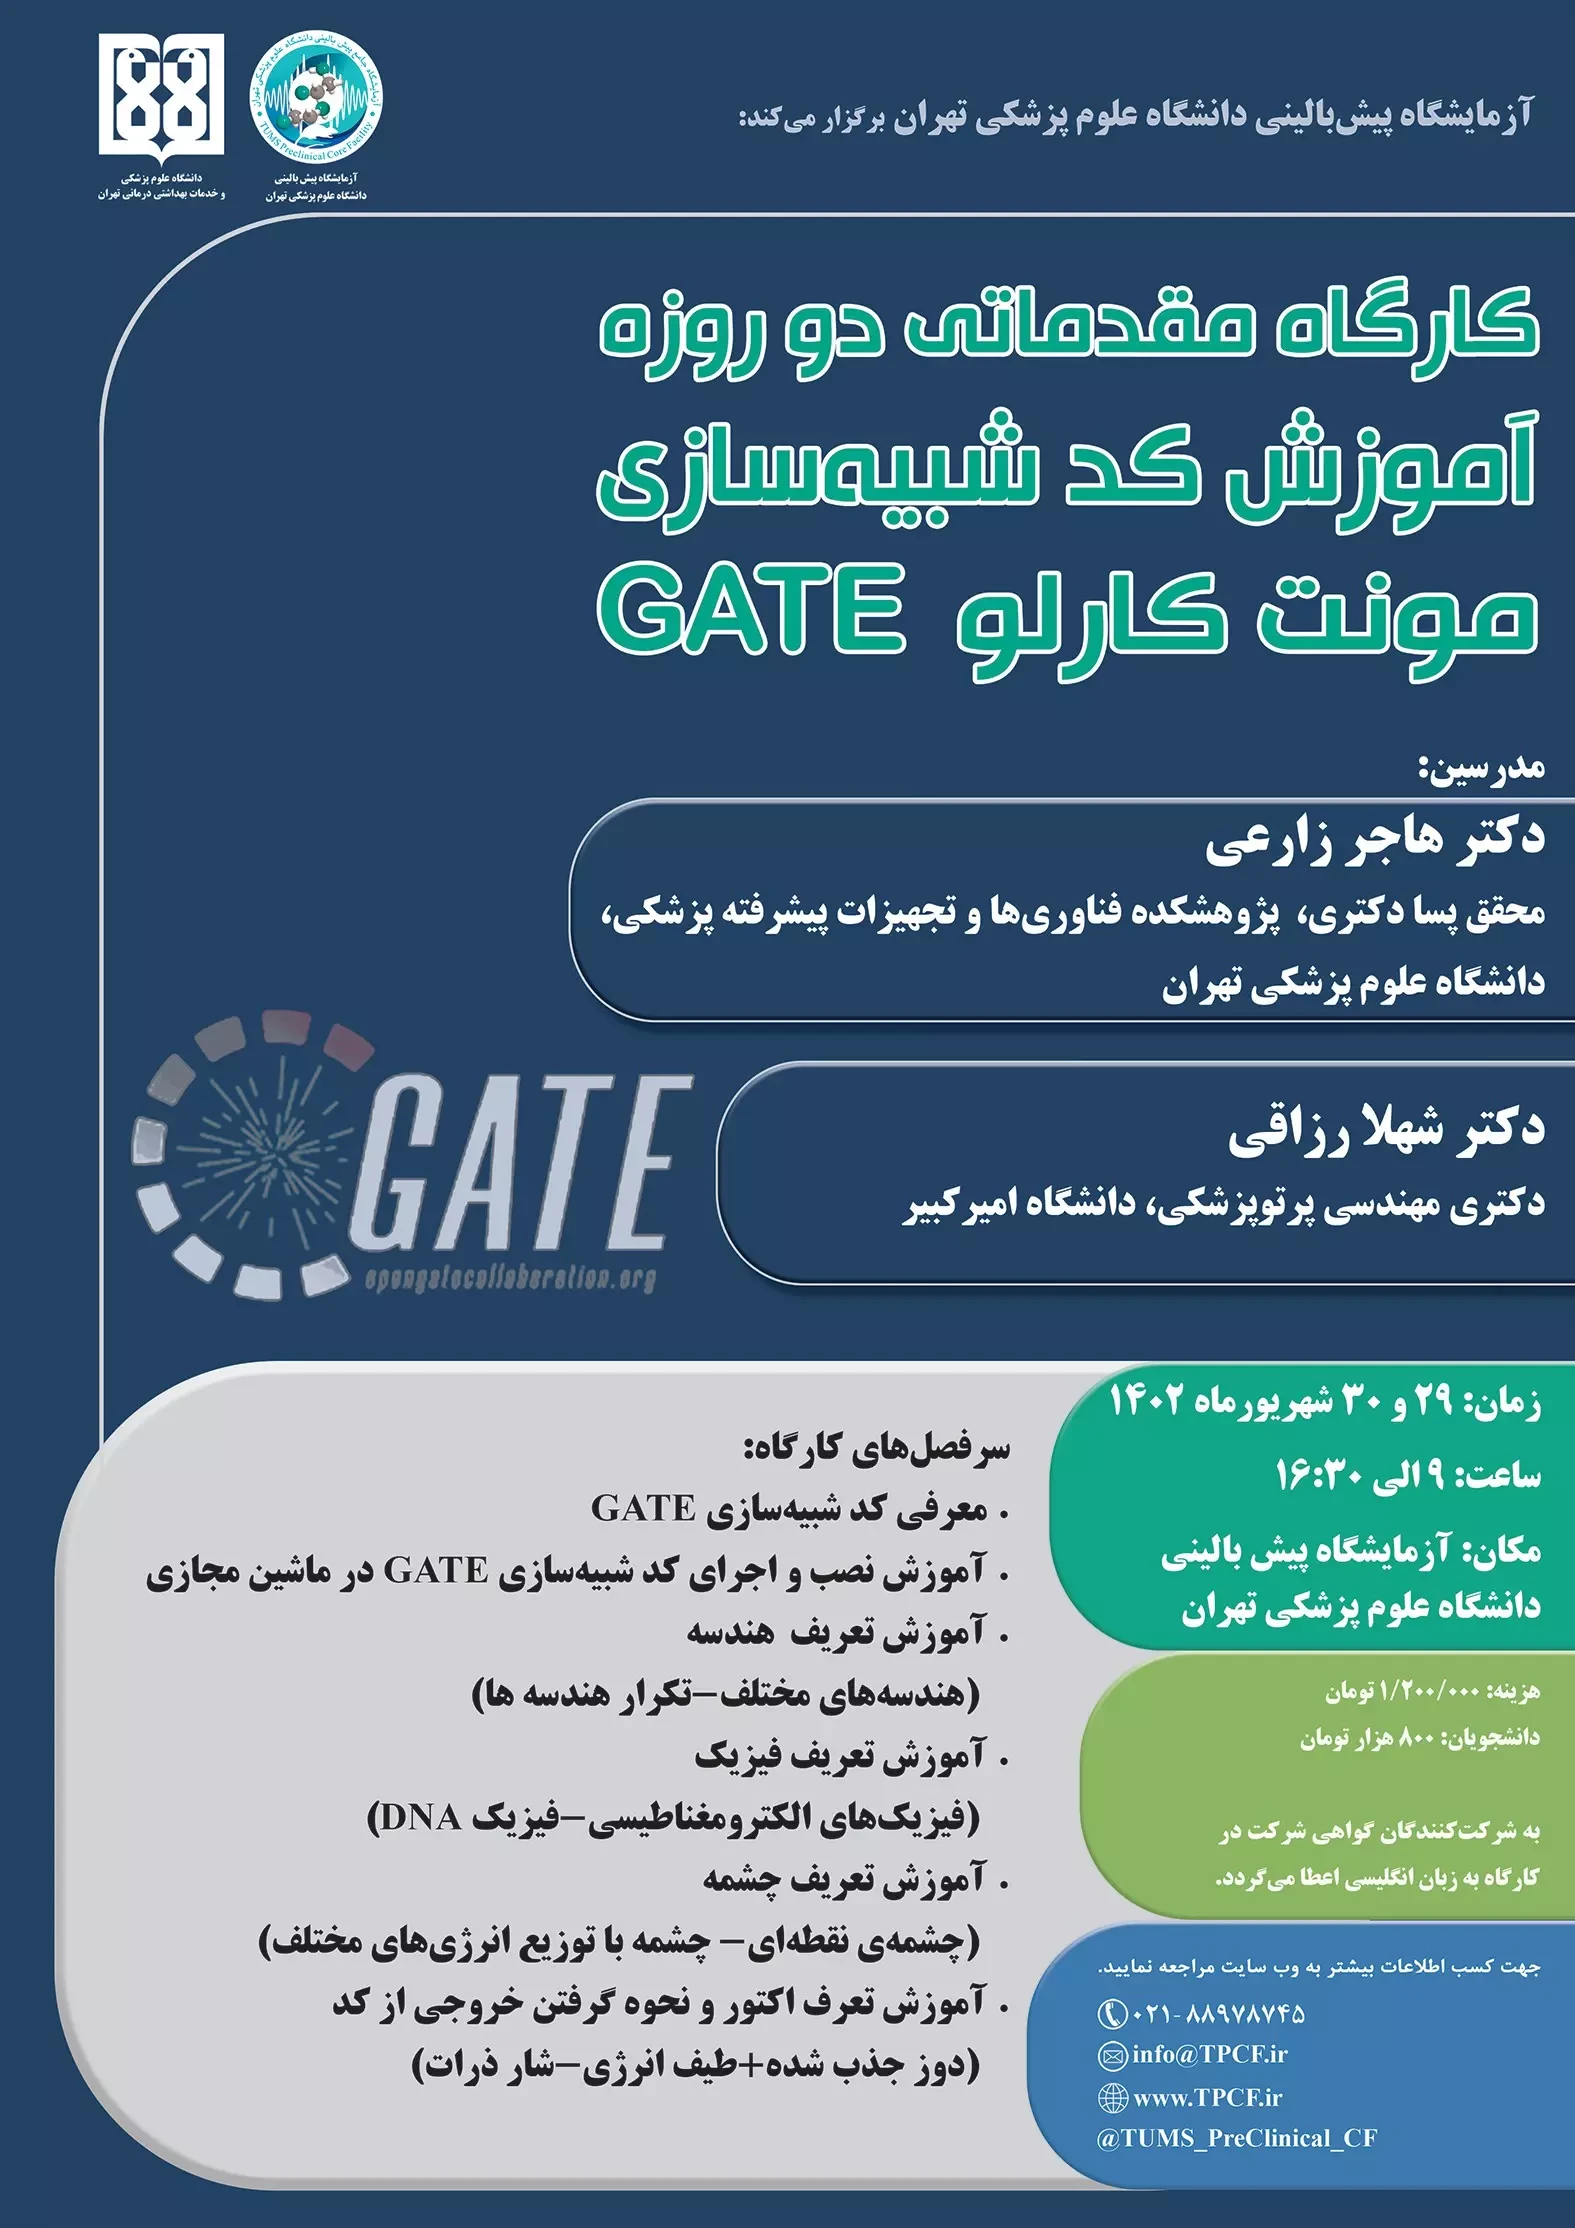 کارگاه مقدماتی آموزش کد شبیه سازی مونت کارلو GATE ویژه شبیه سازی سیستم های تصویربرداری پزشکی